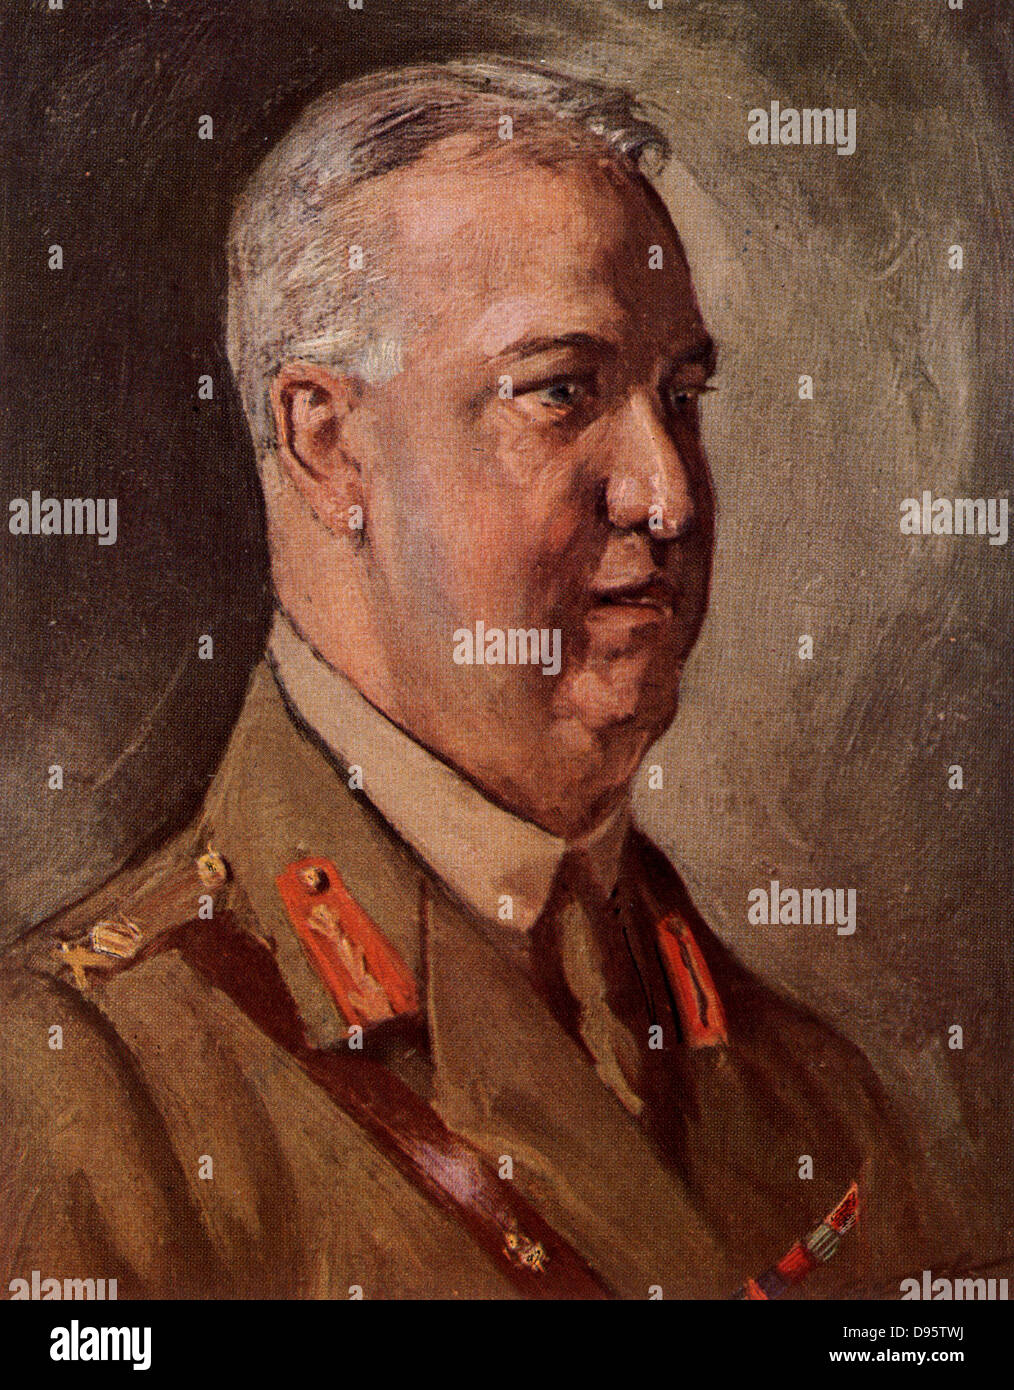 Le Lieutenant-général Sir Arthur Currie W (1875-1933). À partir de 1917 Currie a été commandant des forces canadiennes en Europe durant la Première Guerre mondiale. Banque D'Images